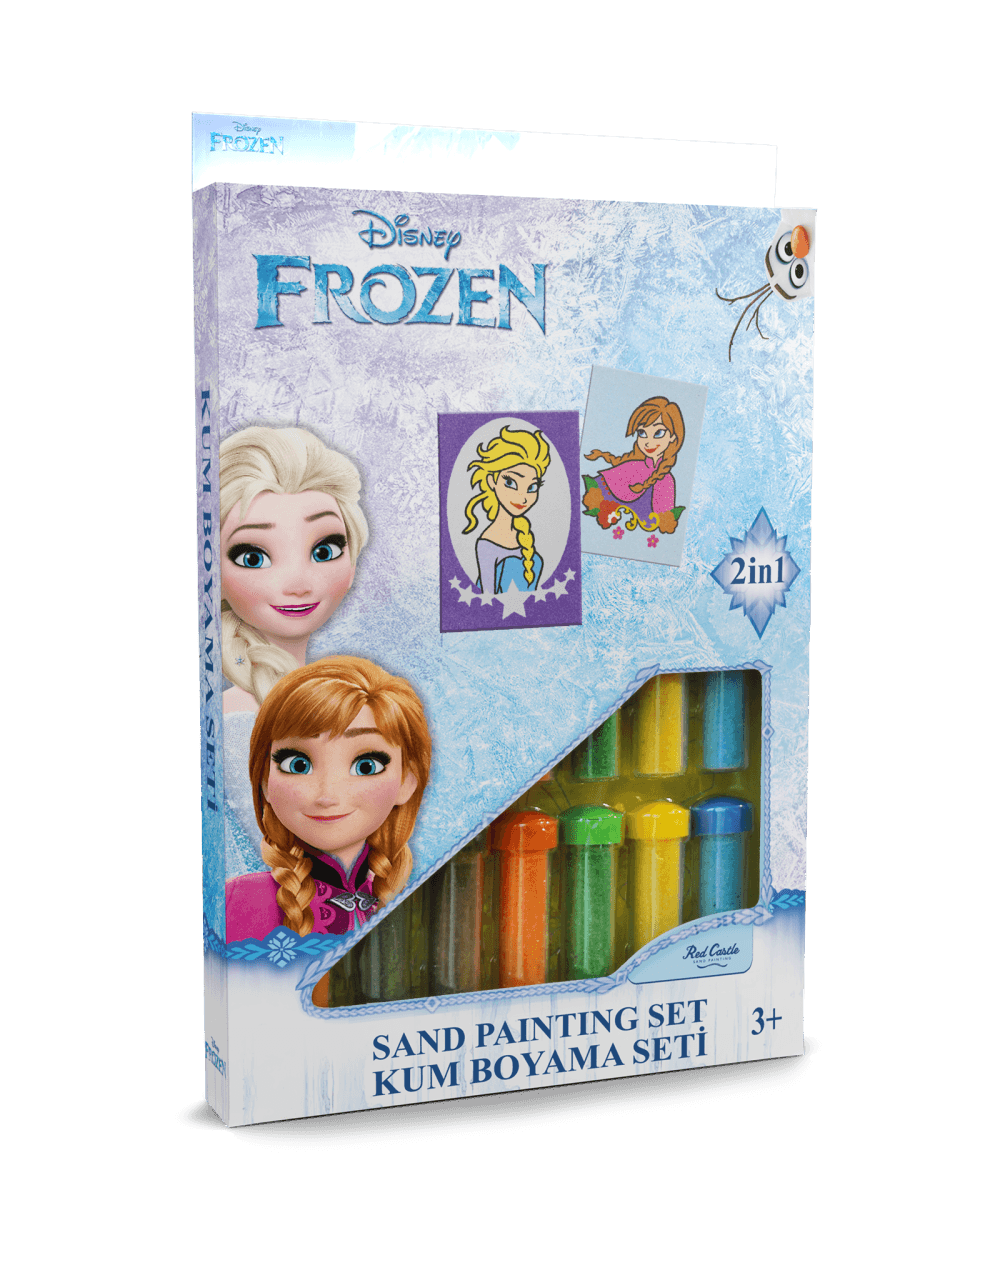 Disney Karlar Ülkesi Frozen Elsa & Anna Eğitici ve Eğlenceli Kum Boyama Seti-Red Castle DS-31